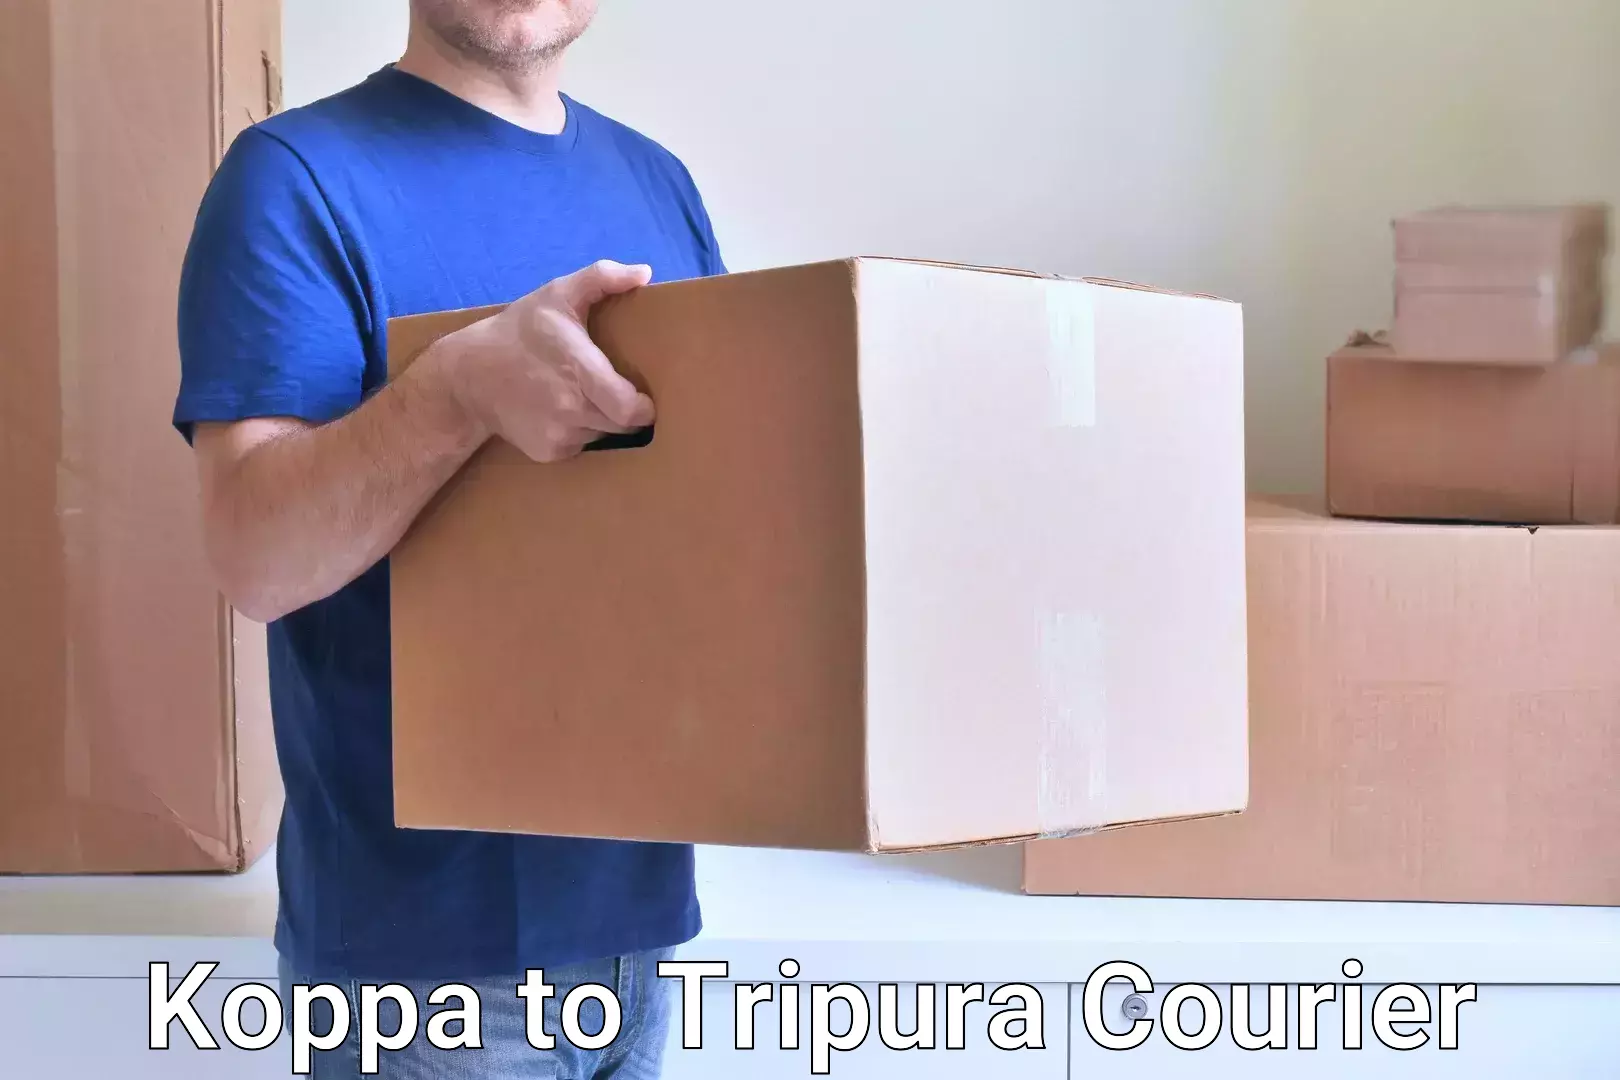 Digital courier platforms Koppa to Teliamura